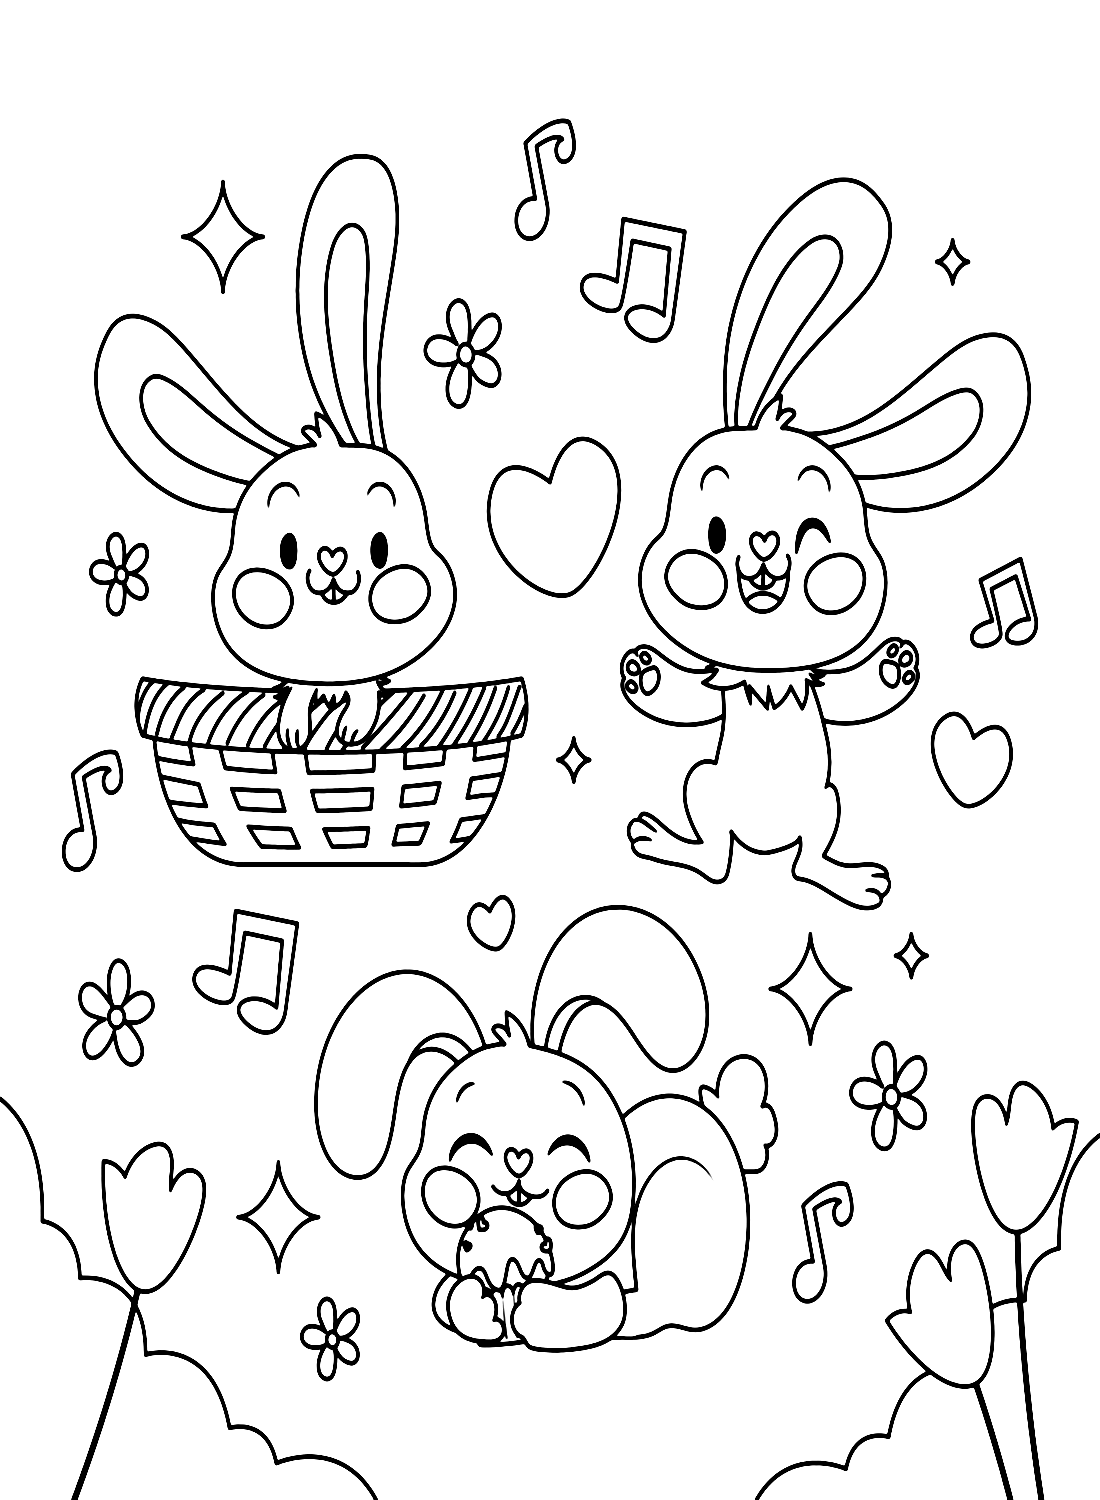 Three Rabbits Enjoying Music from Rabbit